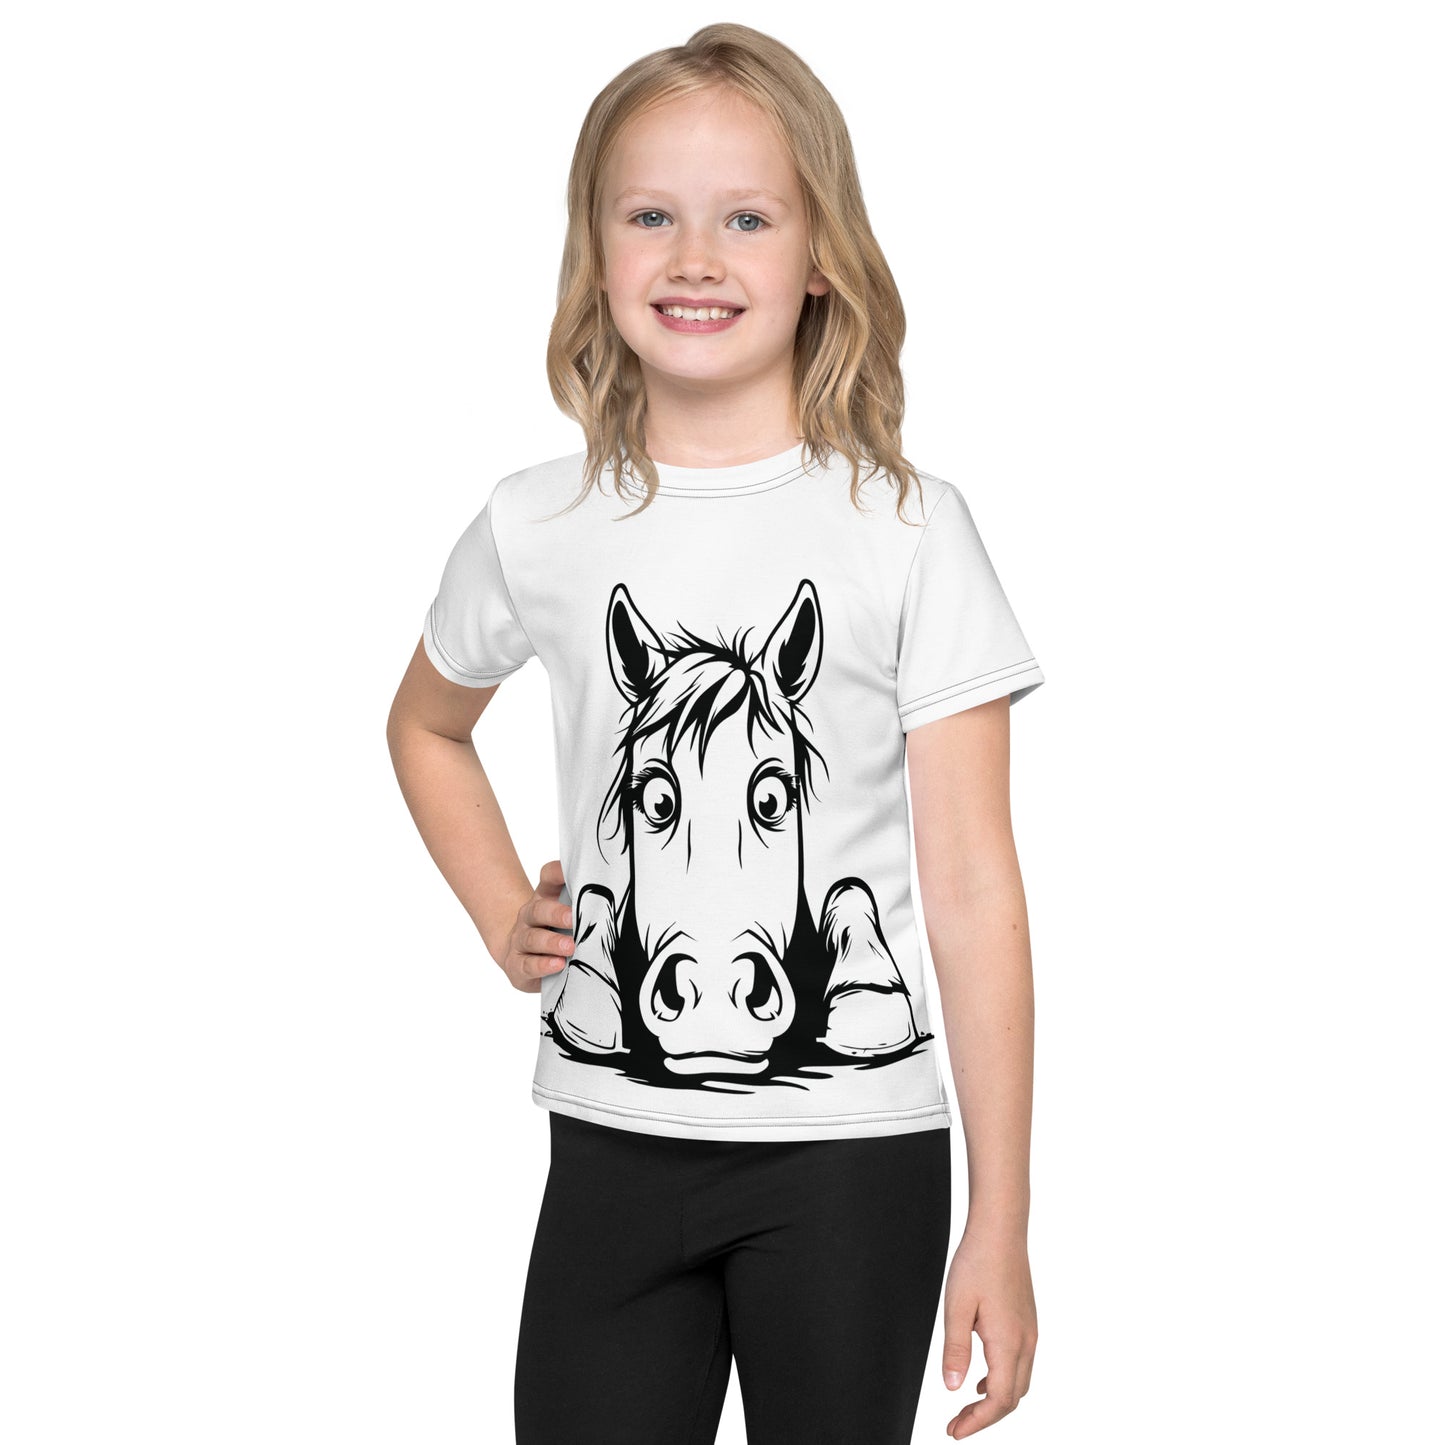 Kids crew neck t-shirt- Peeking horse 1 - offthespeed